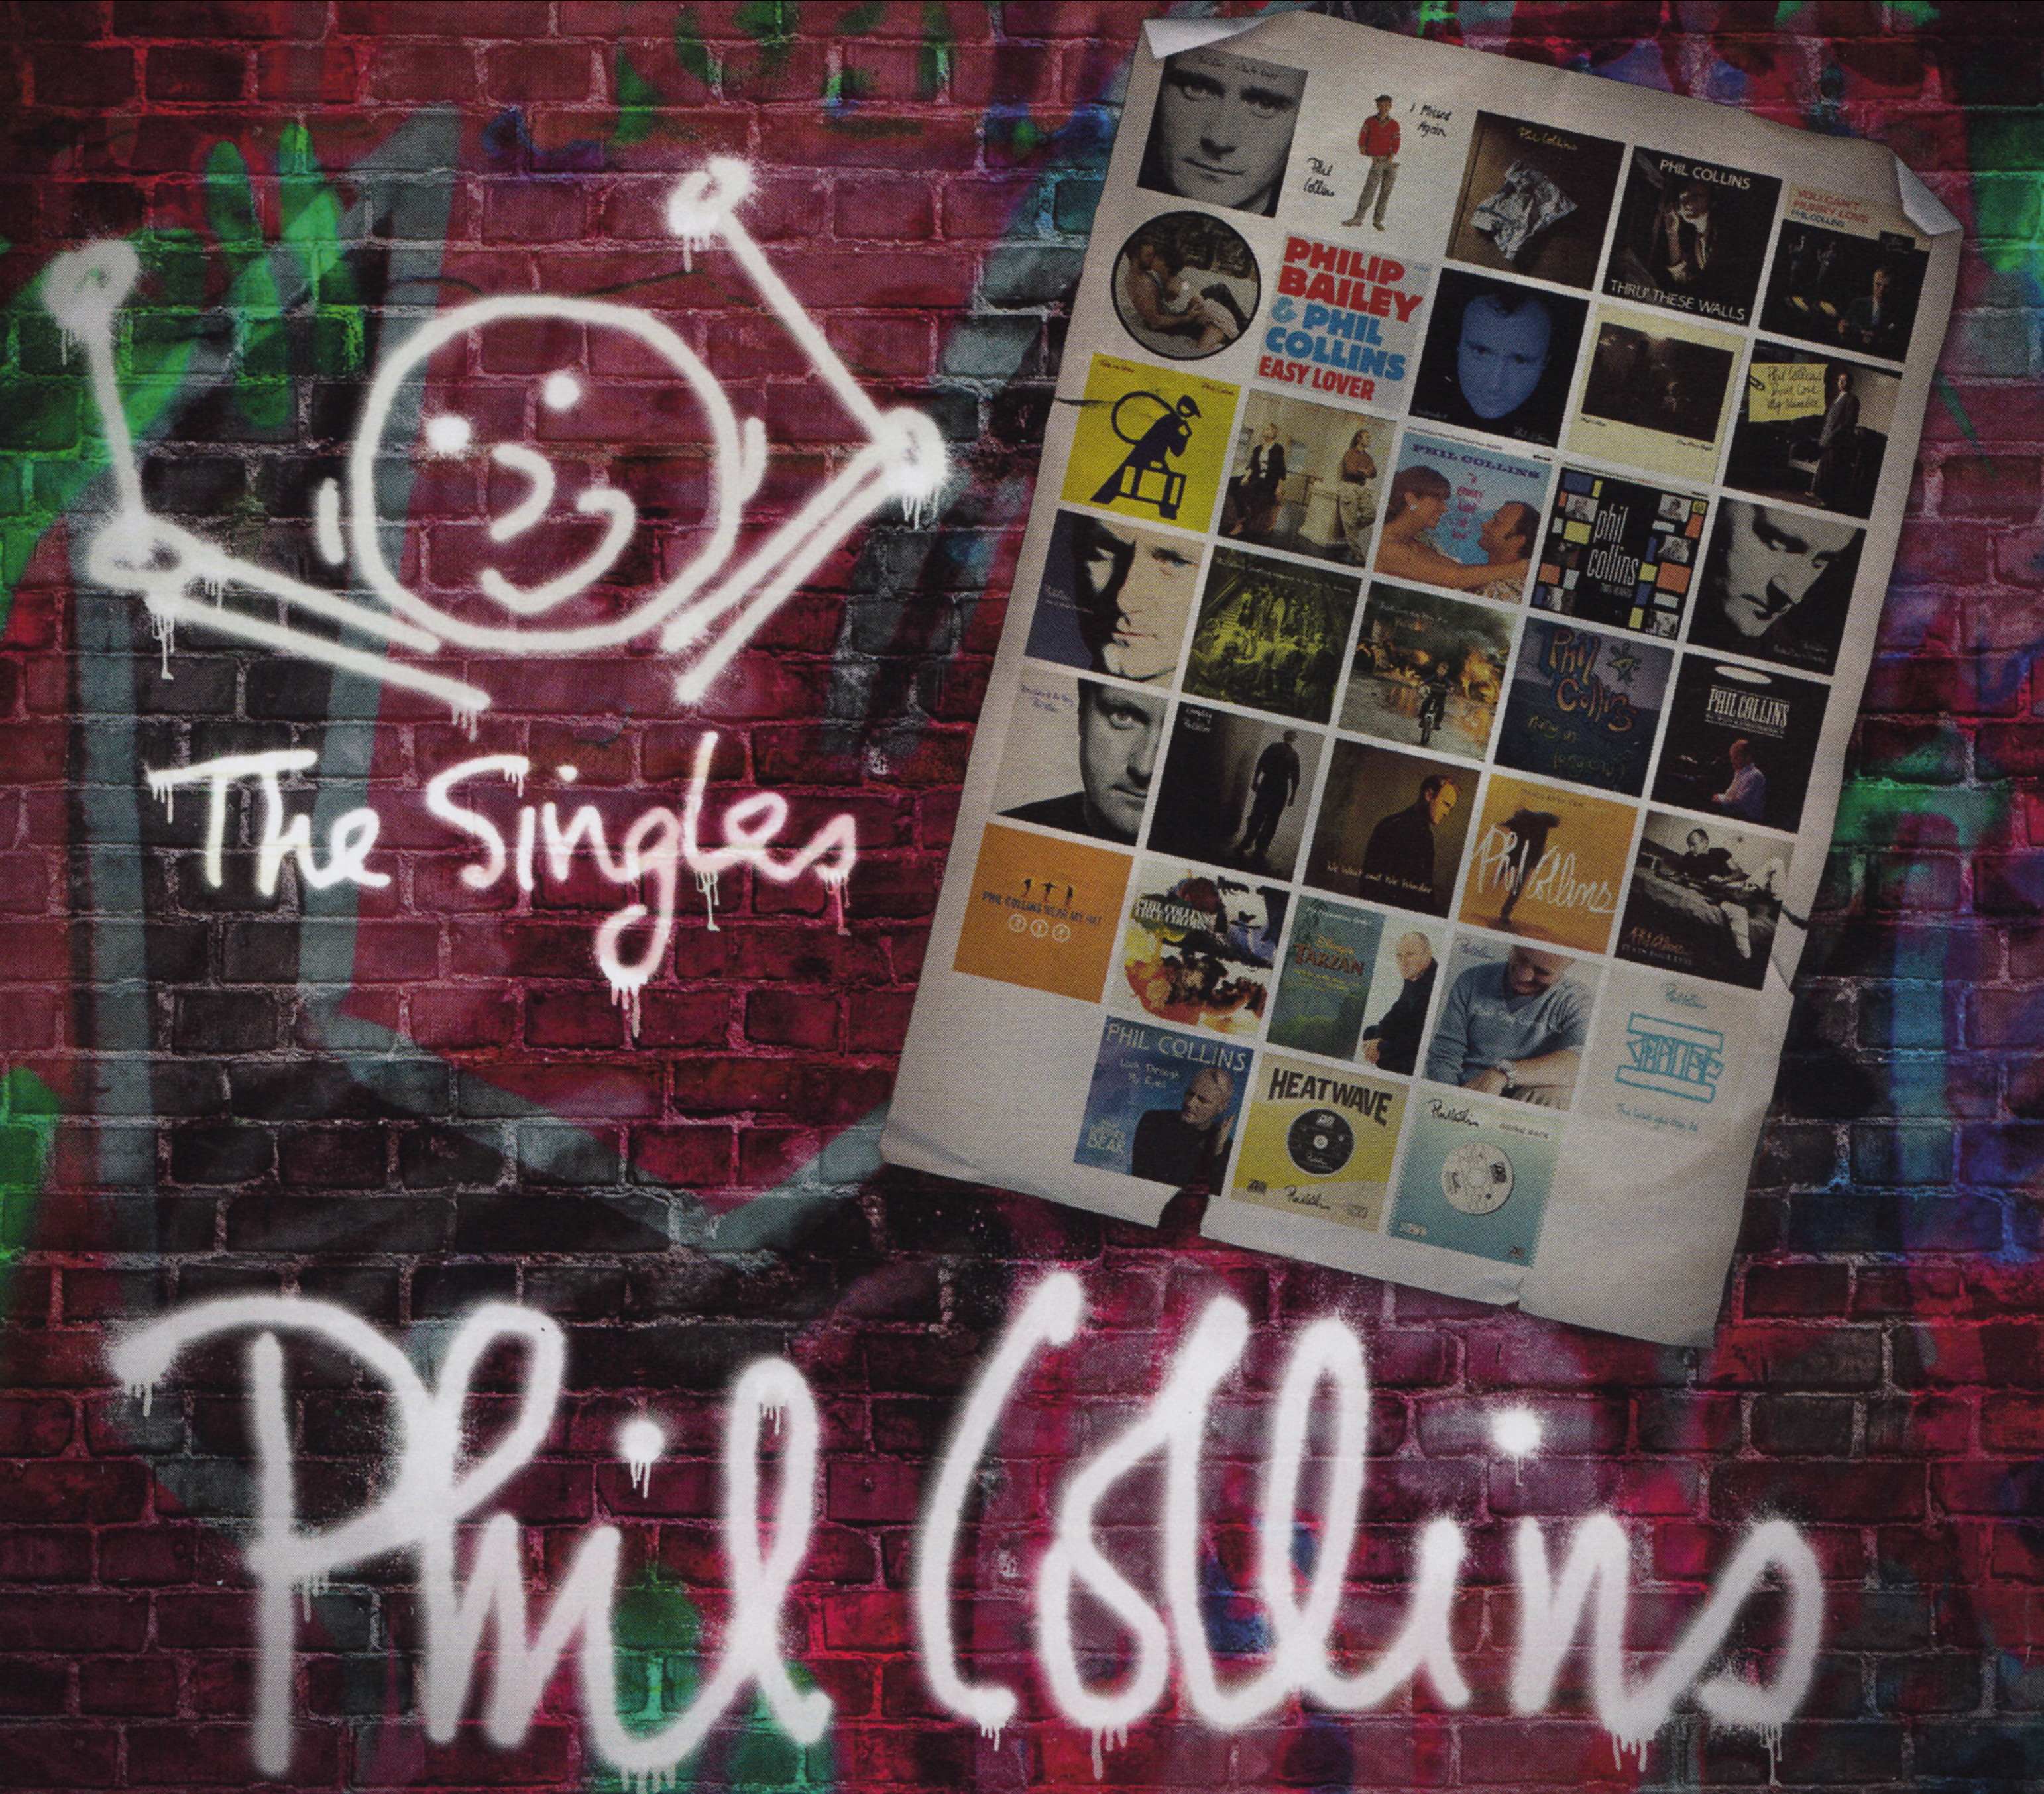 Phil Collins - The Singles (3-cd) in DTS-wav. (op verzoek)